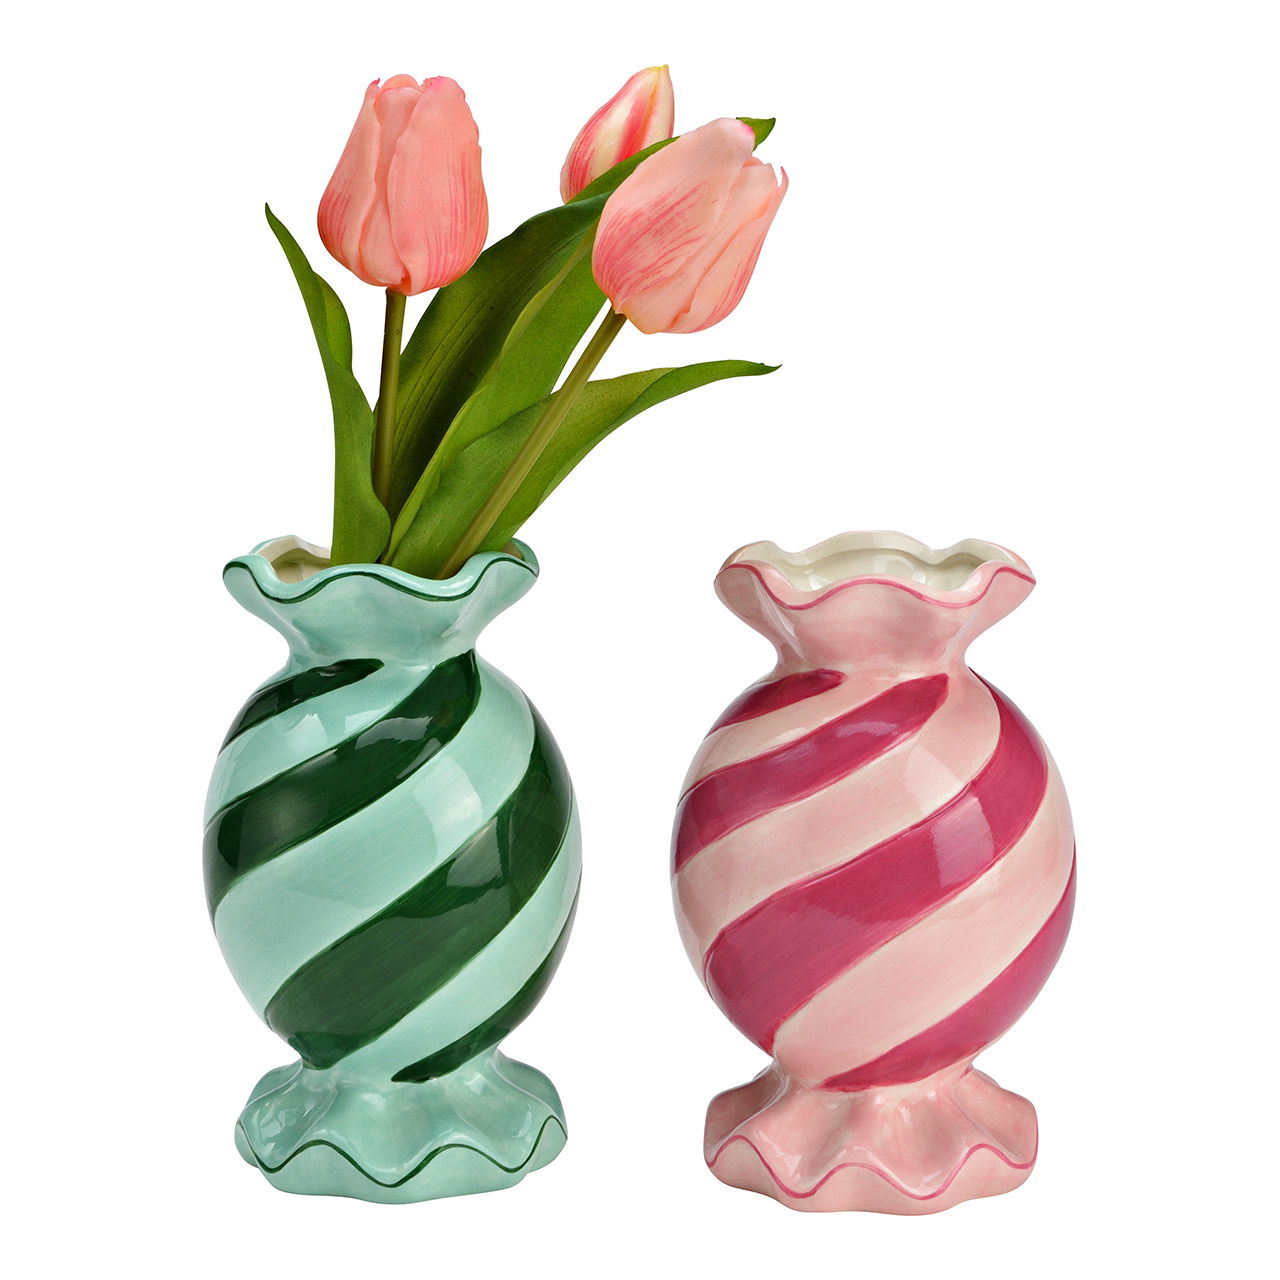 Vaso per caramelle in ceramica 2 volte, verde/rosa (L/H/D) 10x16x10cm